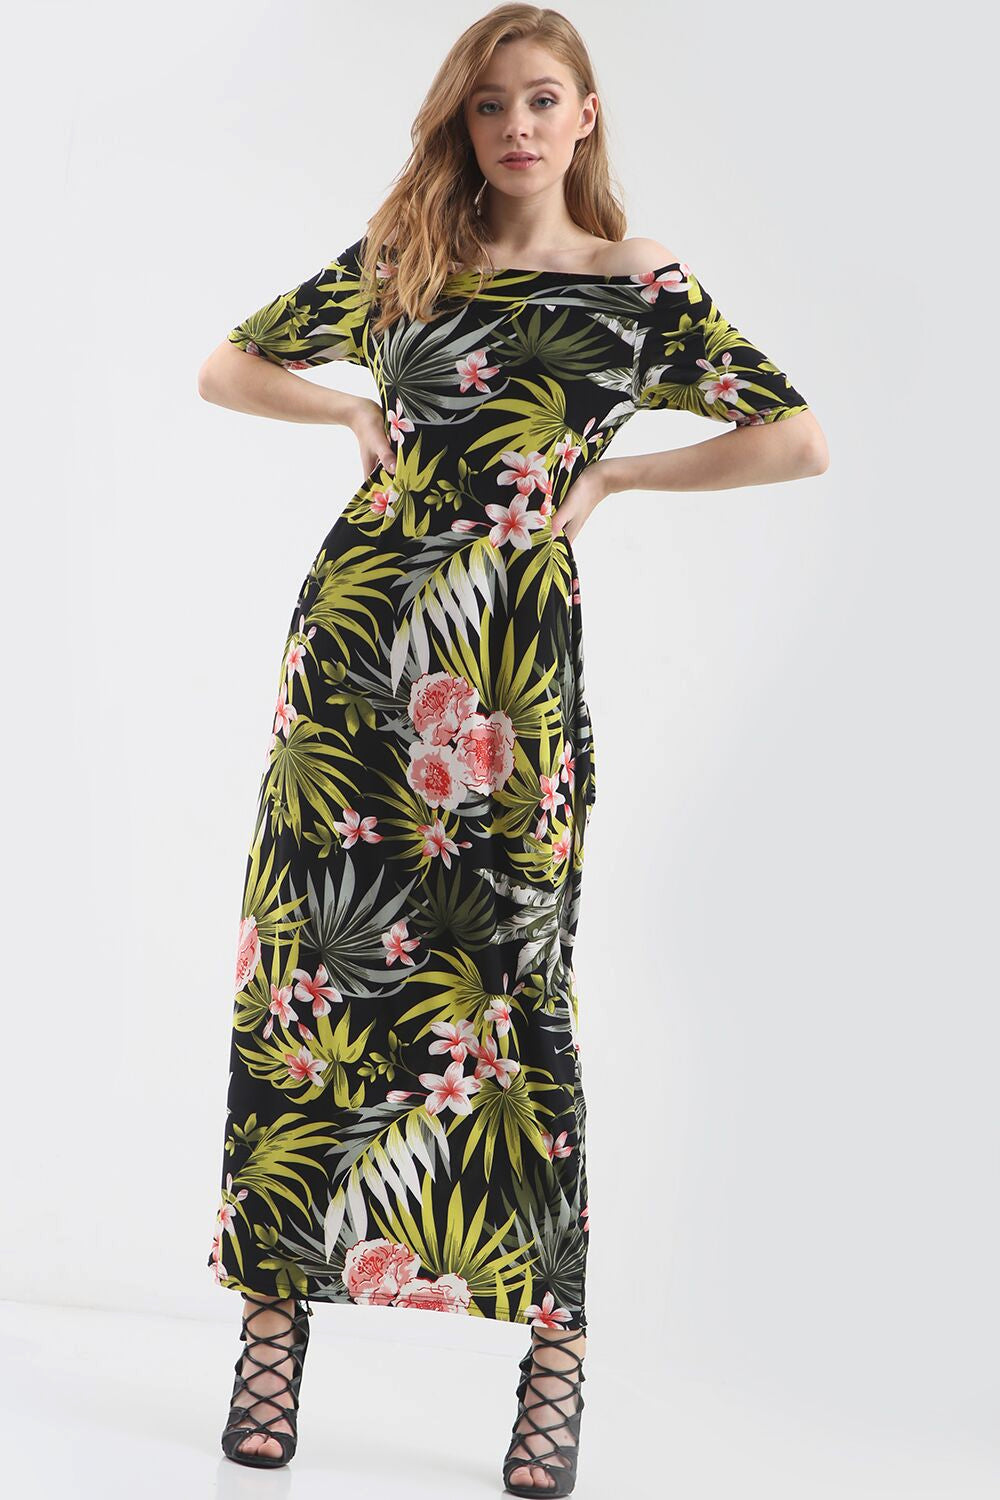 Off Shoulder Green Tropical Print Maxi Dress - bejealous-com